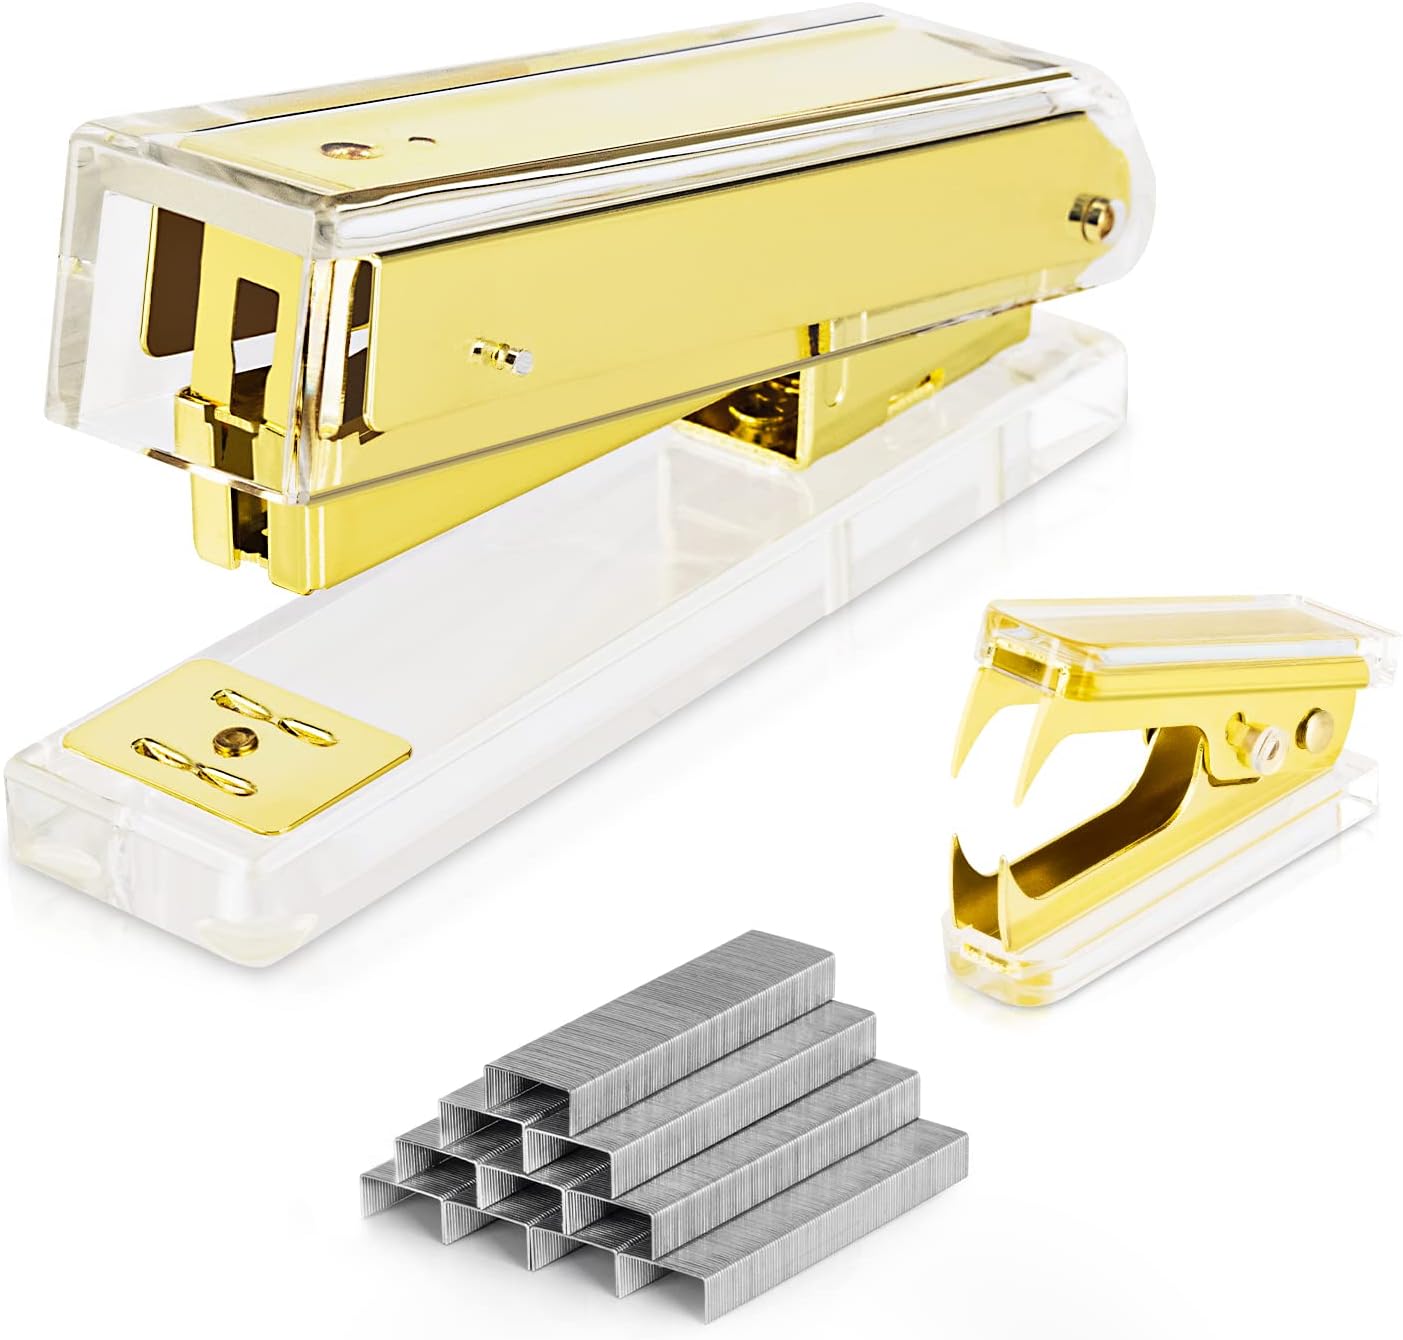 Deli Stapler, Golden Stapler, Desktop Stapler Office Stapler, 25 Sheet Capacity, Includes 1000 Staples and Staple Remover, Acrylic Gold